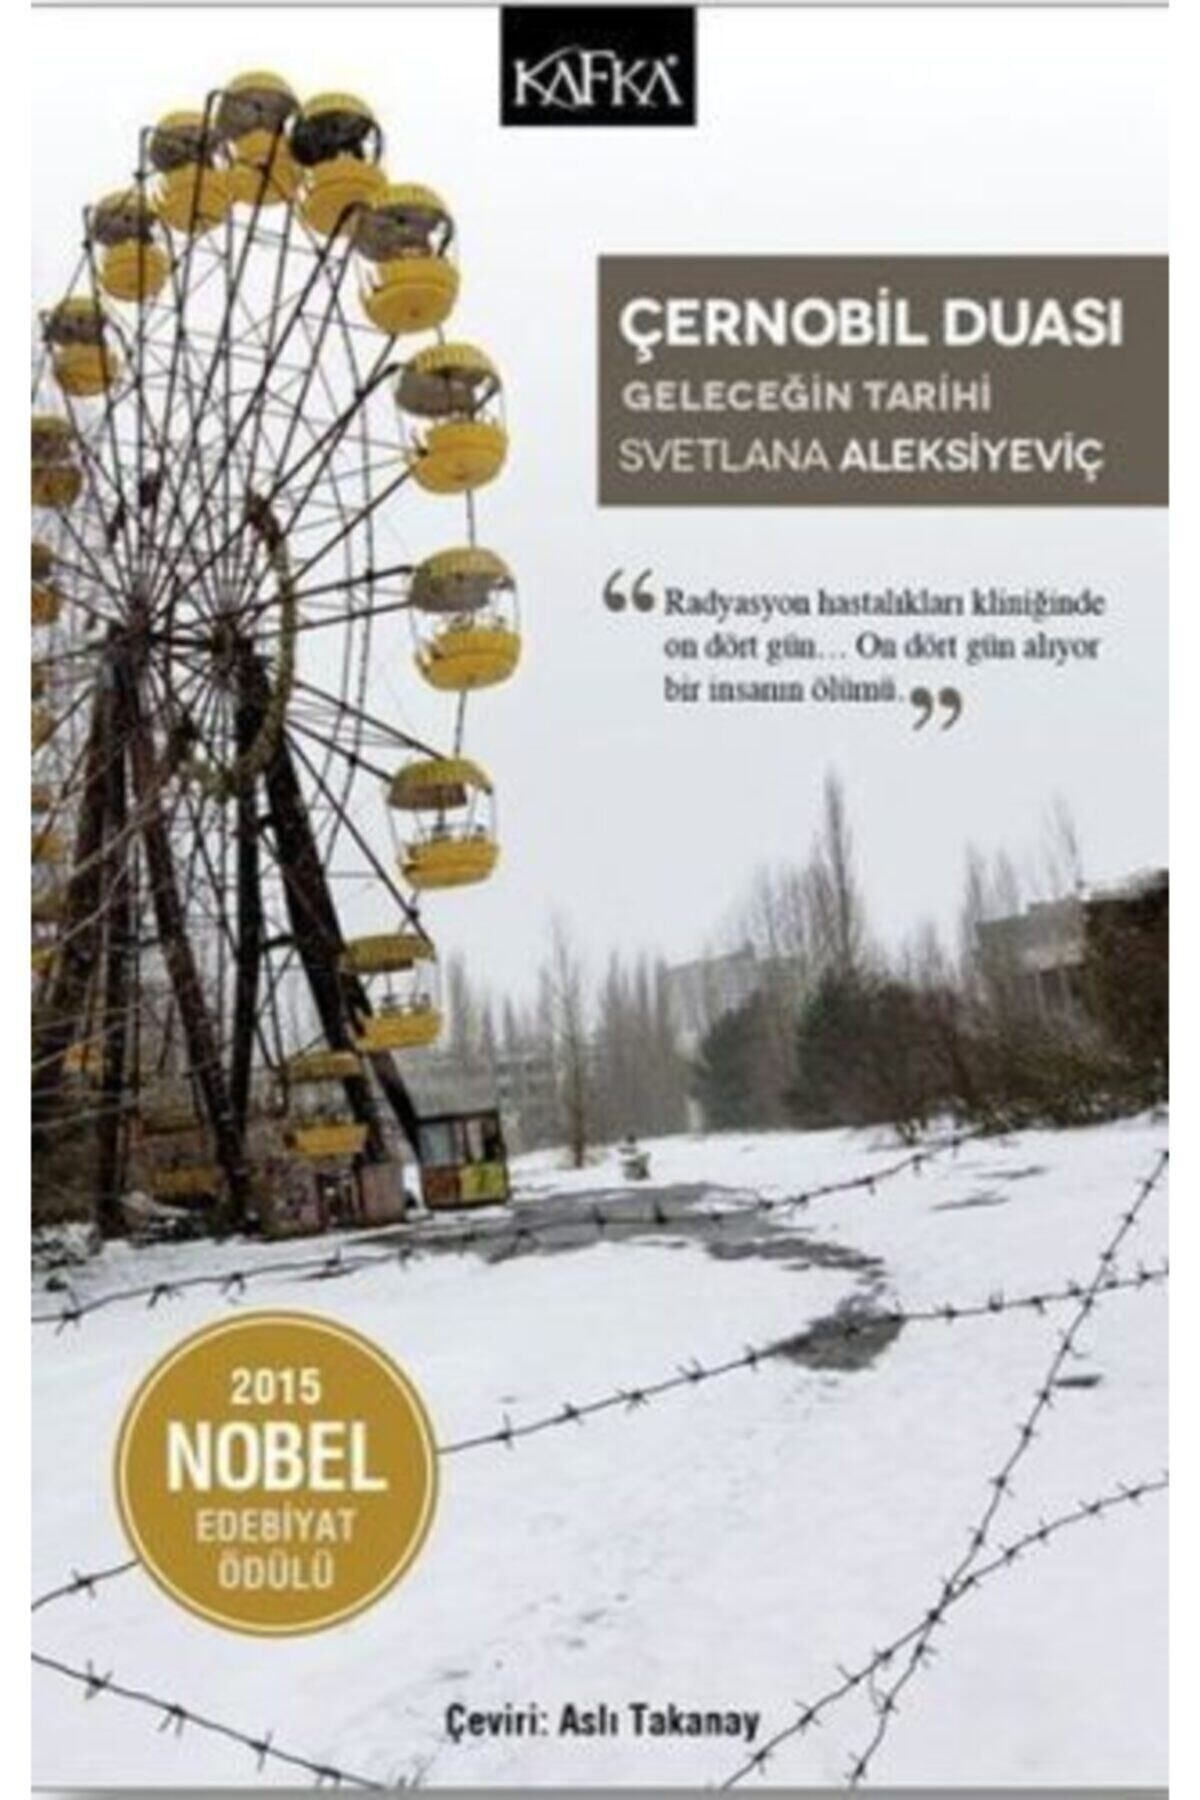 Kafka Kitap Çernobil Duası & Geleceğin Tarihi